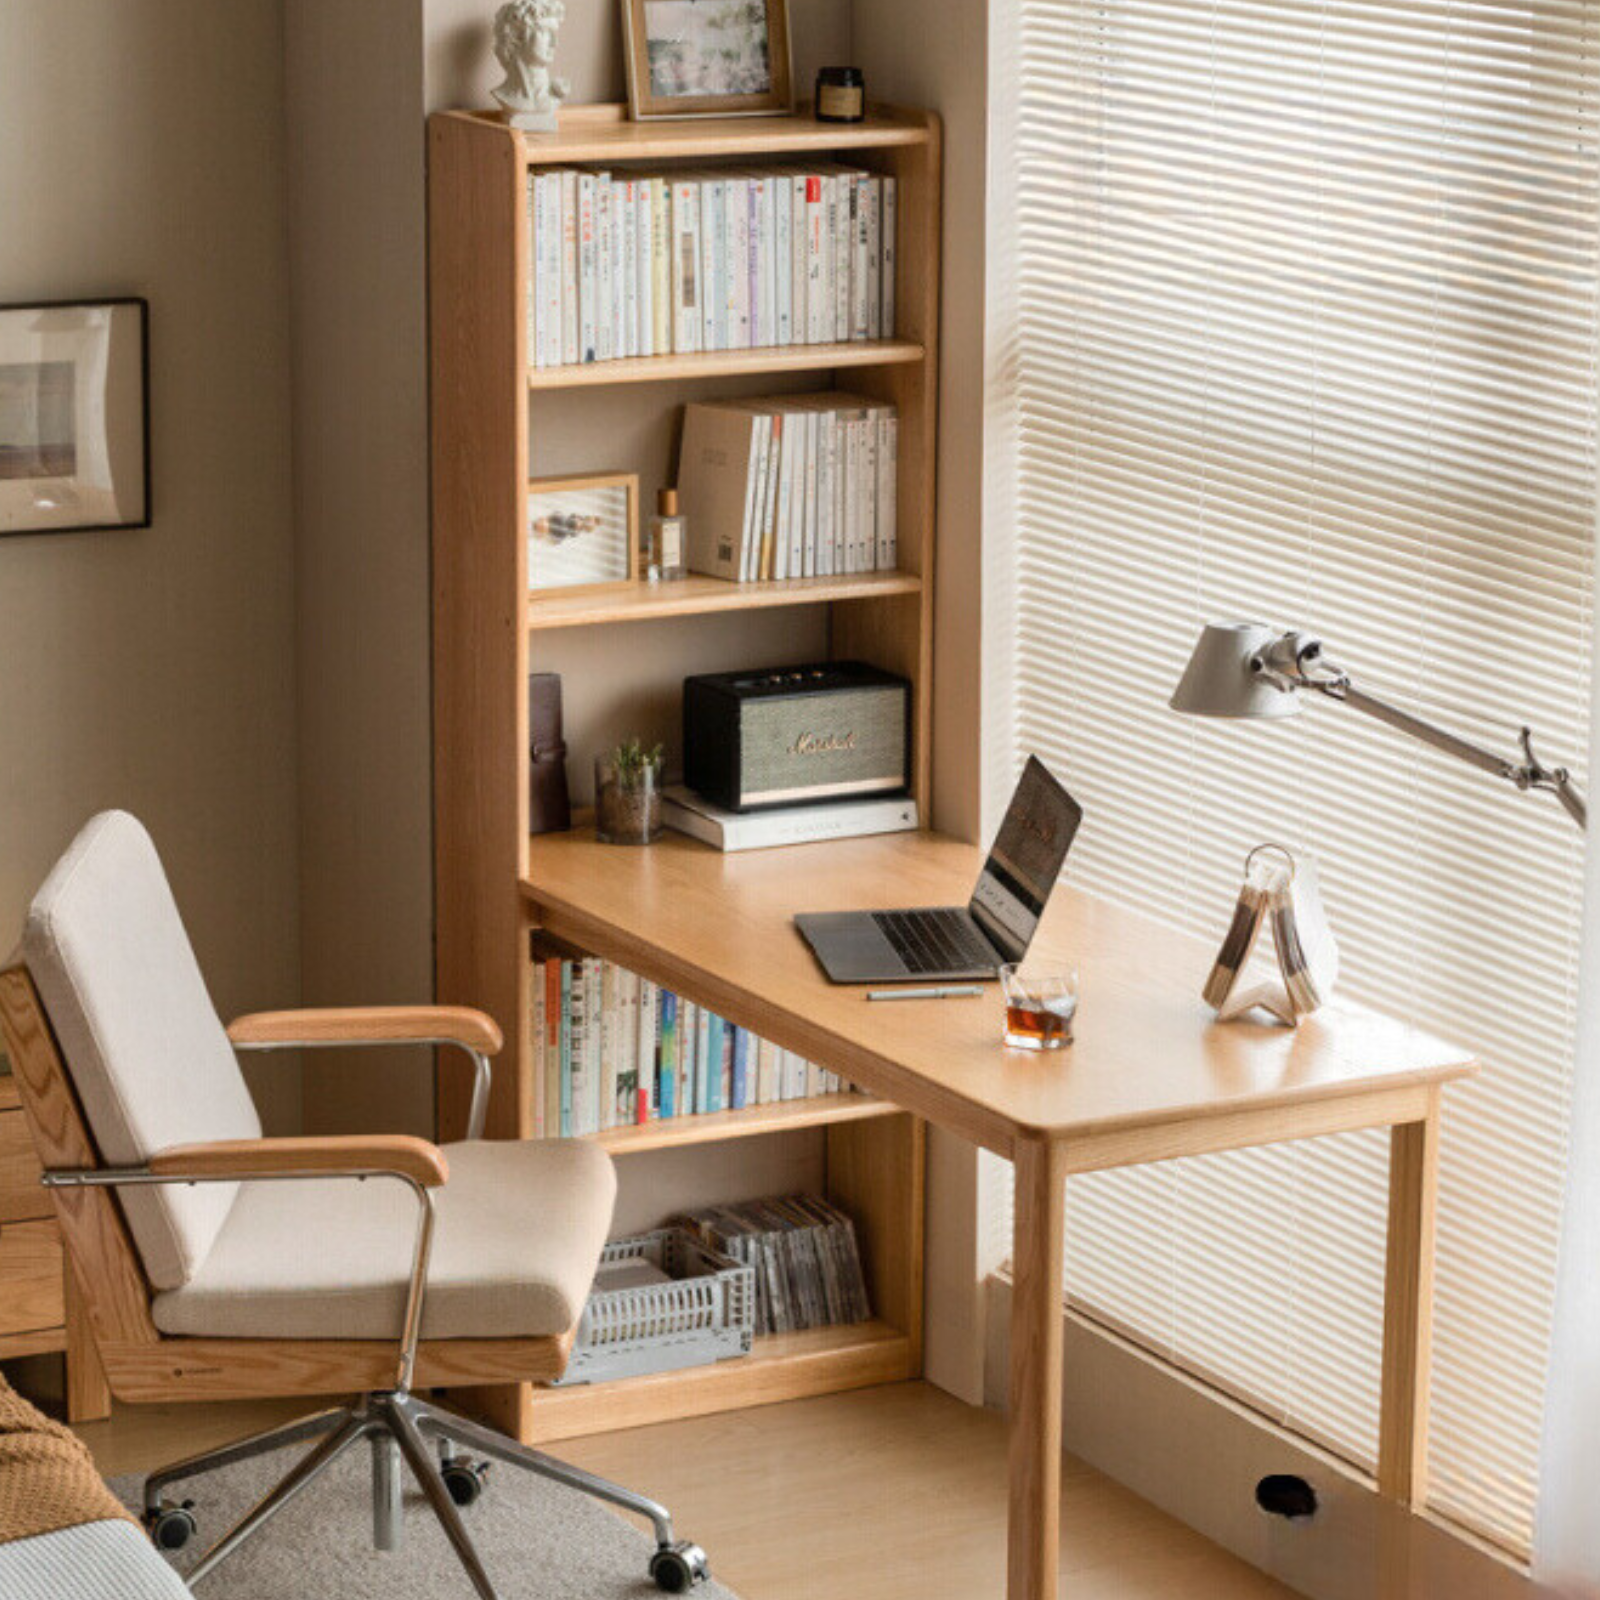 Oak Solid Wood Desk and Bookshelf Integrated Office Desk)